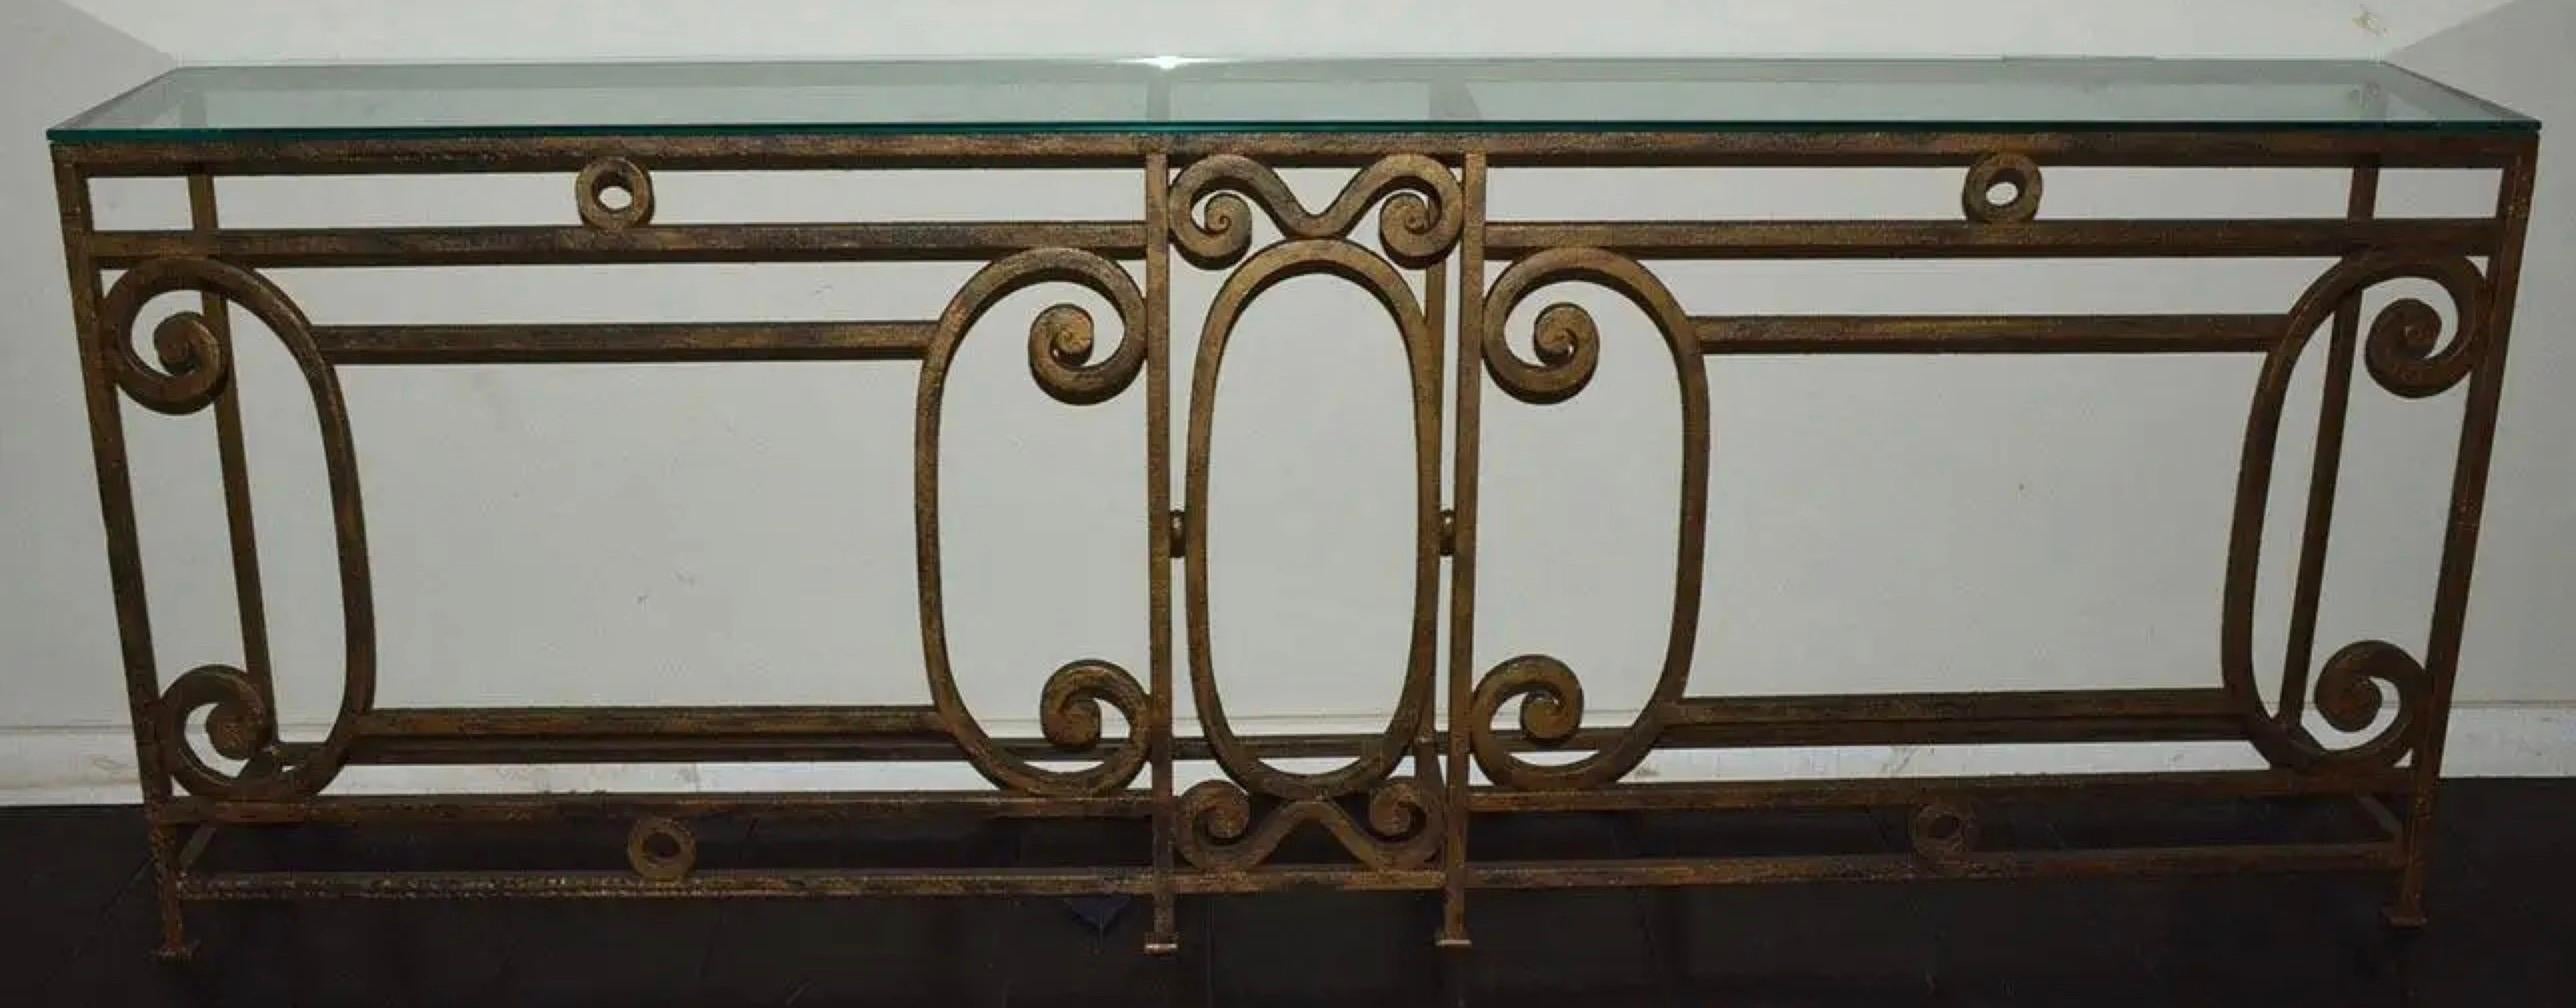 La longue console ou table de canapé en métal de style baroque a une finition dorée brossée et est fabriquée à la main avec des volutes et des détails élégants. Les pieds ont des coussinets plats en fer. La console a été fabriquée à partir de